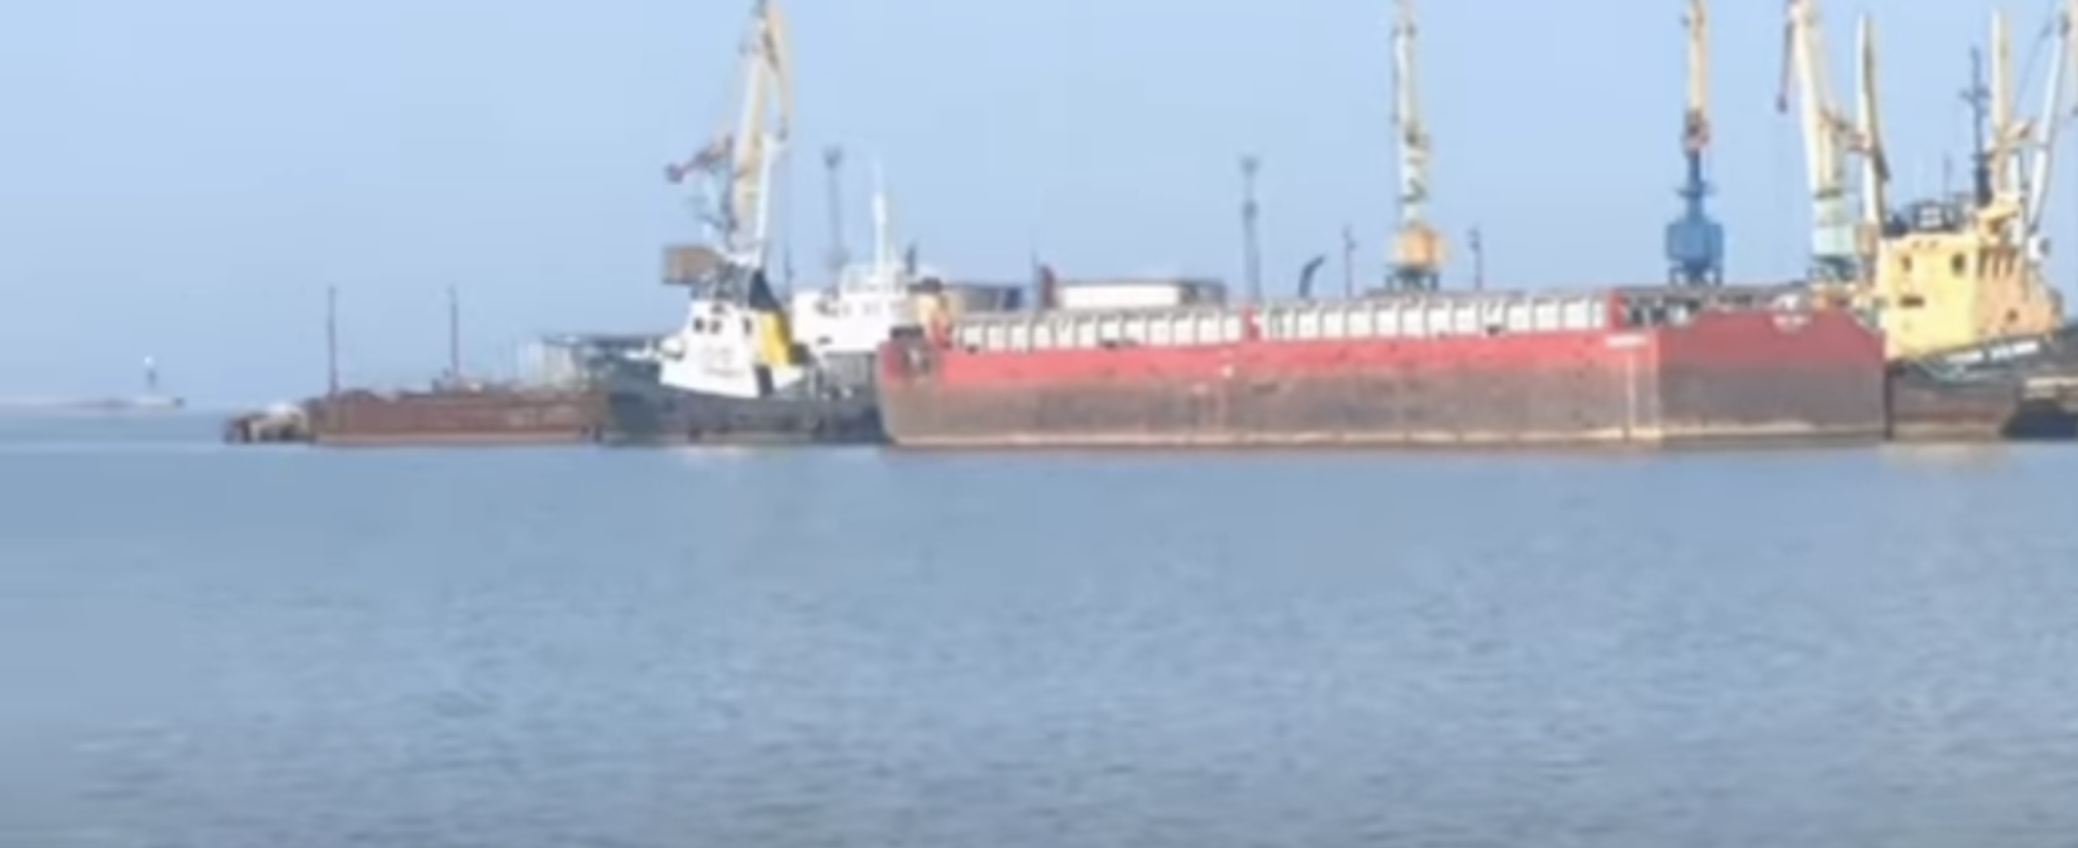 Російська баржа для перевезення зернових на завантаженні, 05.05.2023 р., скріншот з відео в соцмережах